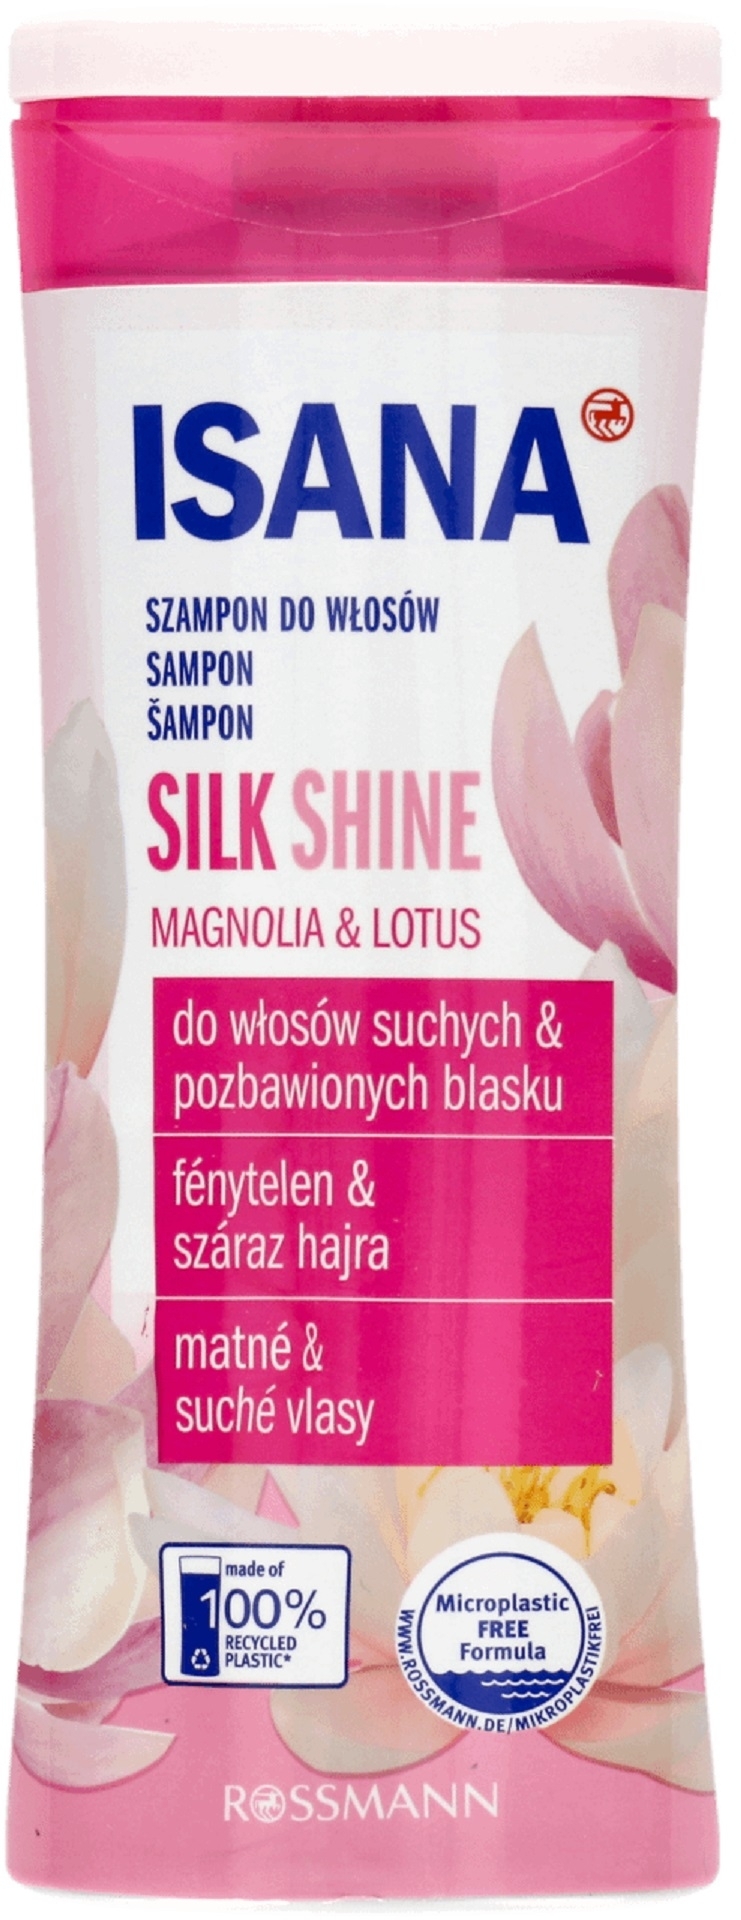 isana szampon silk shine